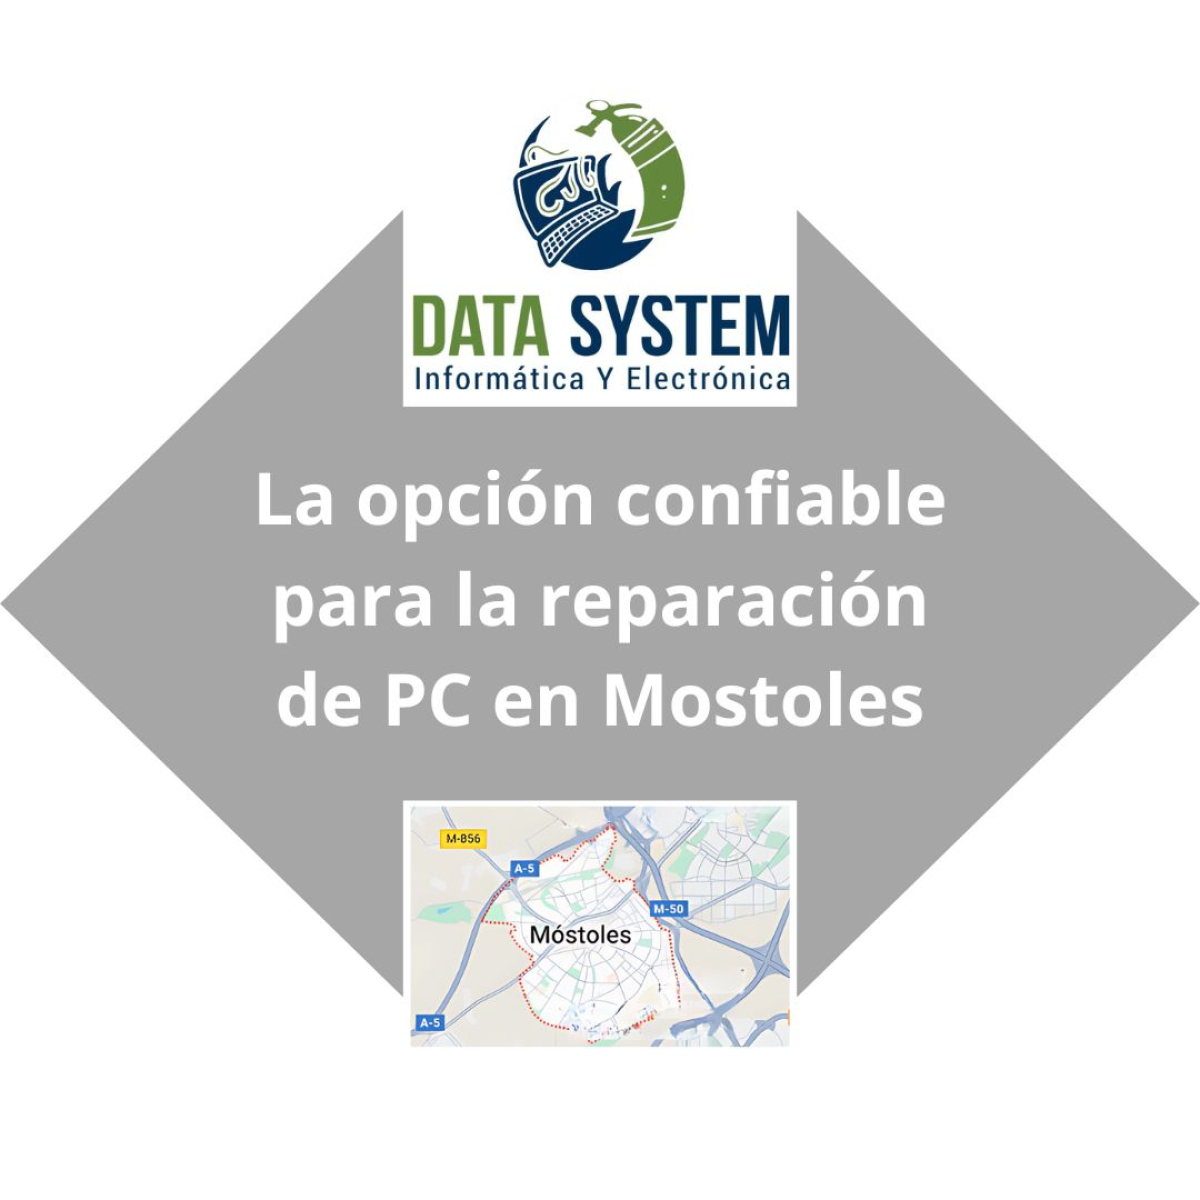 DATA SYSTEM - La opción confiable para la reparación de PC en Móstoles